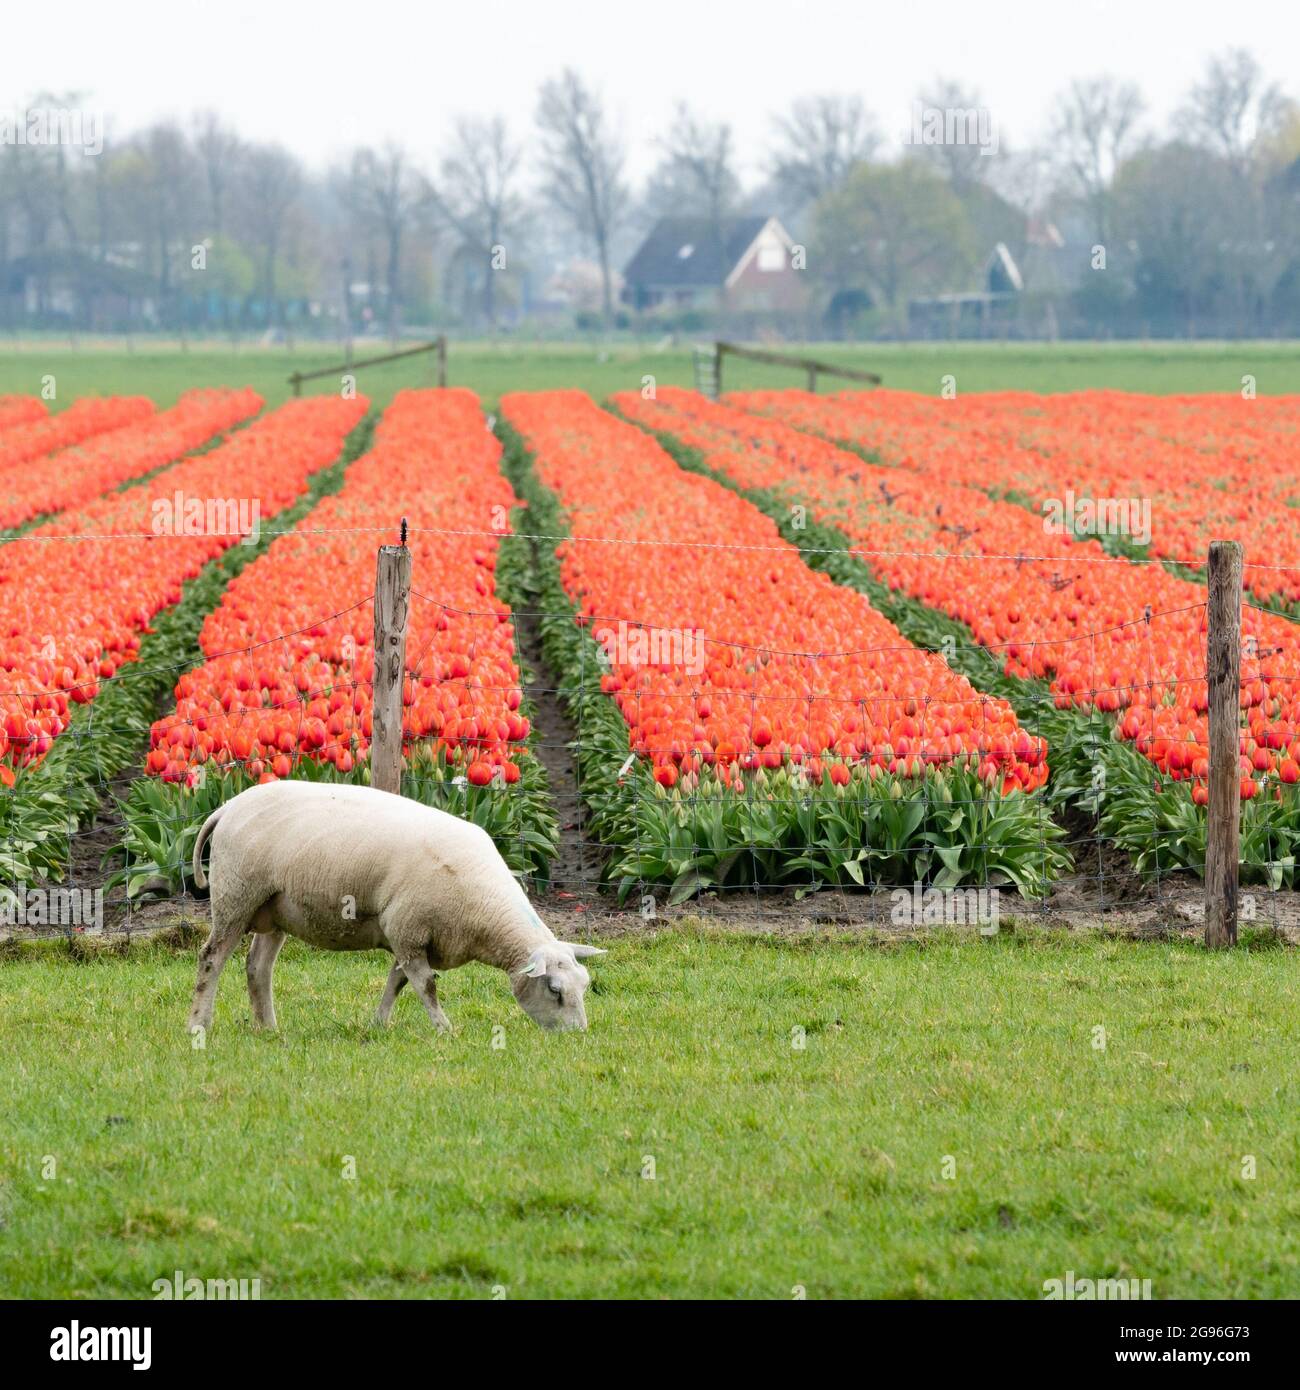 Una pecora bianca sta pascolando in un prato vicino ad un campo di tulipani fioriti rossi. Regione di Schermer-Beemster, Frisia occidentale, Olanda settentrionale, Paesi Bassi. Foto Stock